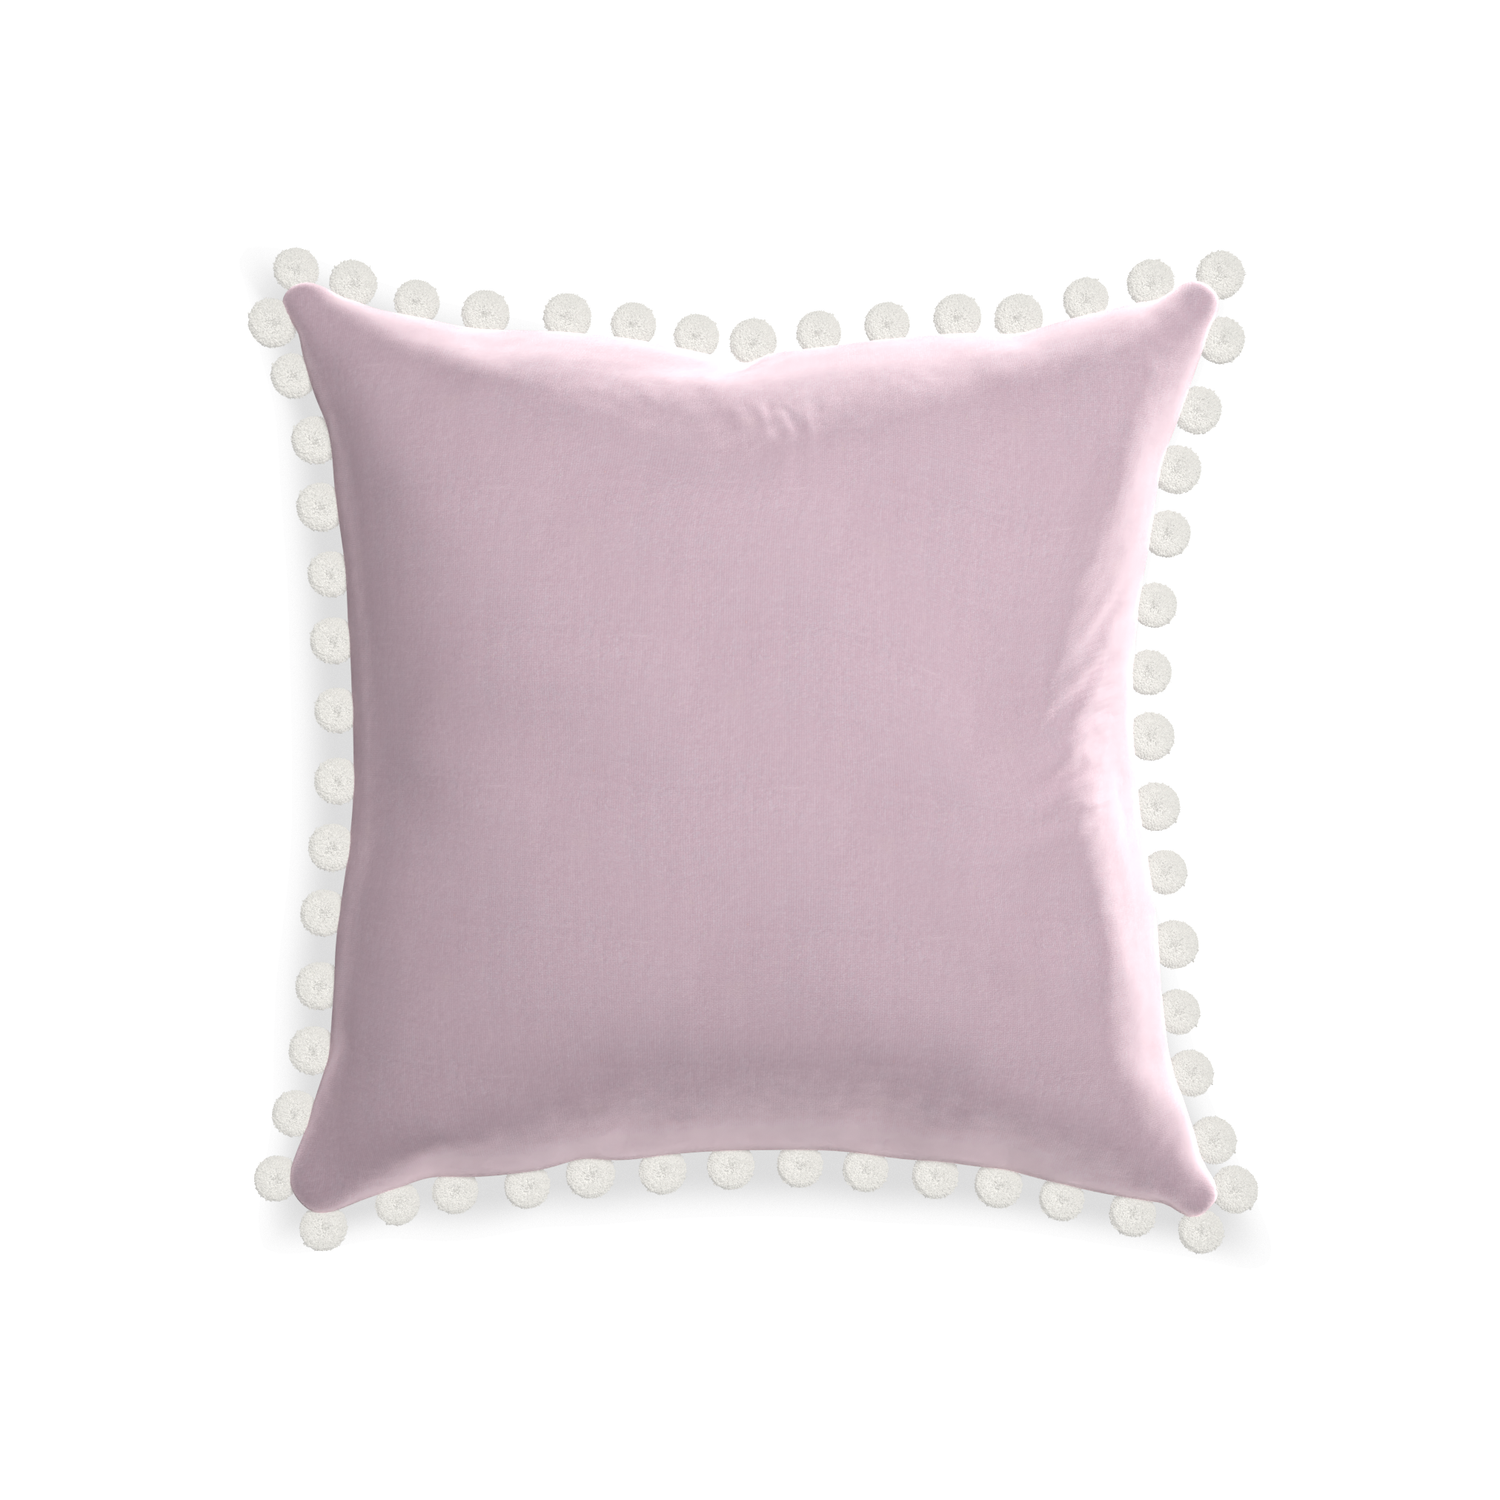 square lilac velvet pillow with white pom poms